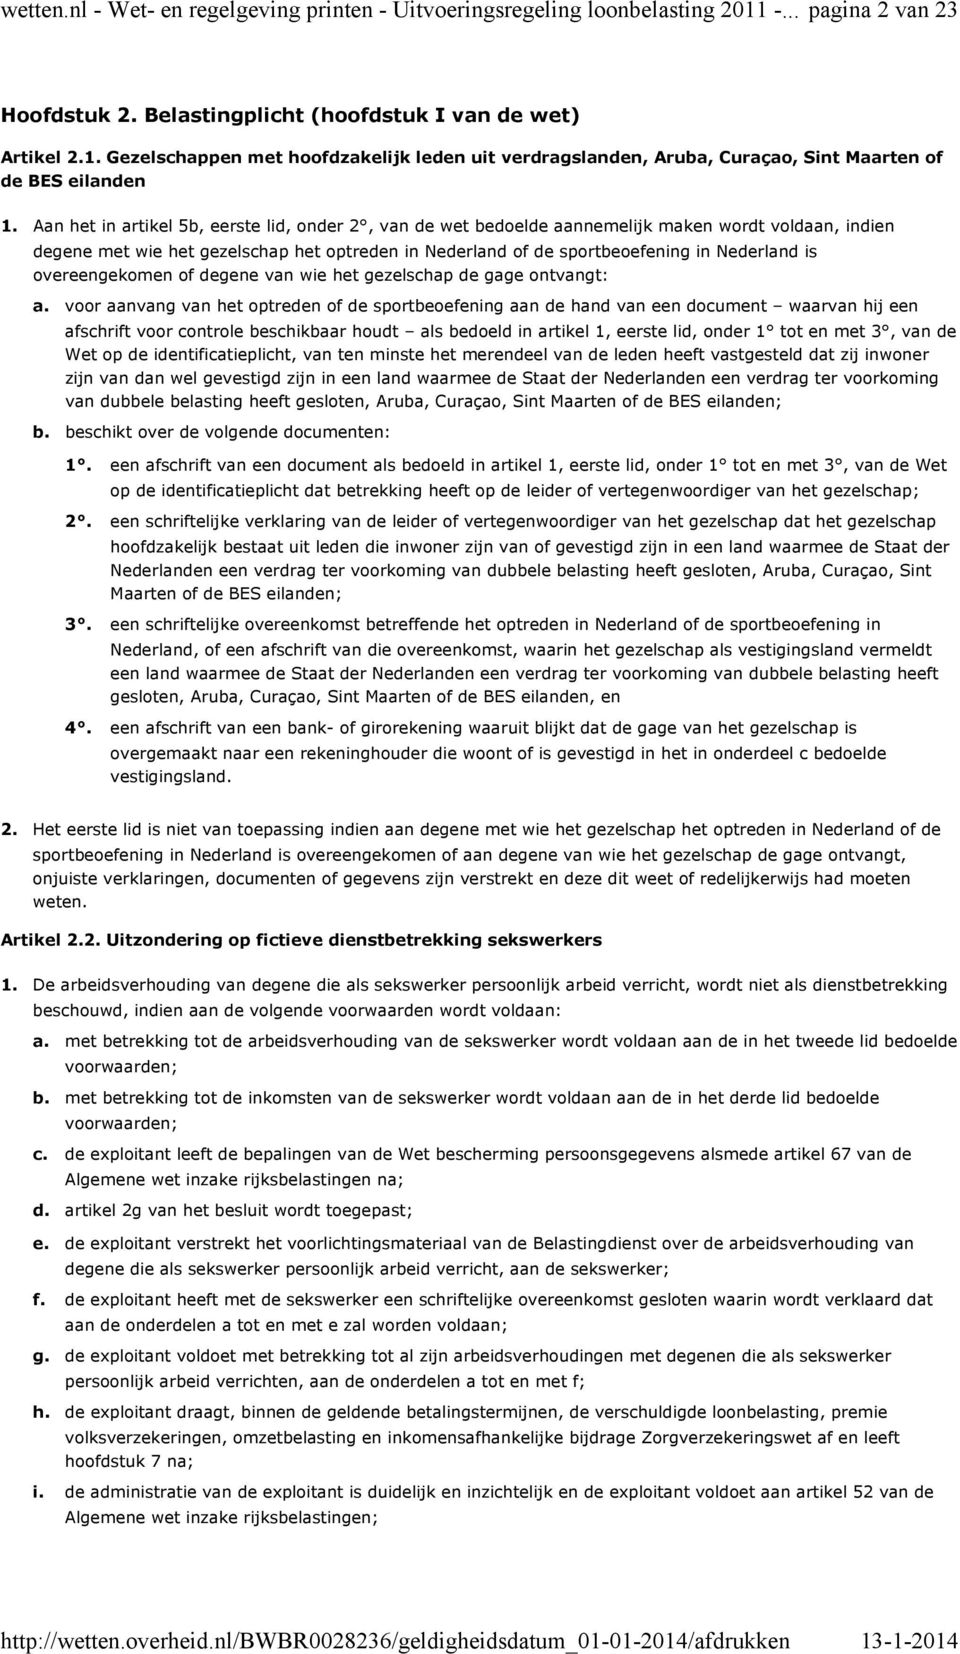 artikel 5b, eerste lid, onder 2, van de wet bedoelde aannemelijk maken wordt voldaan, indien degene met wie het gezelschap het optreden in Nederland of de sportbeoefening in Nederland is